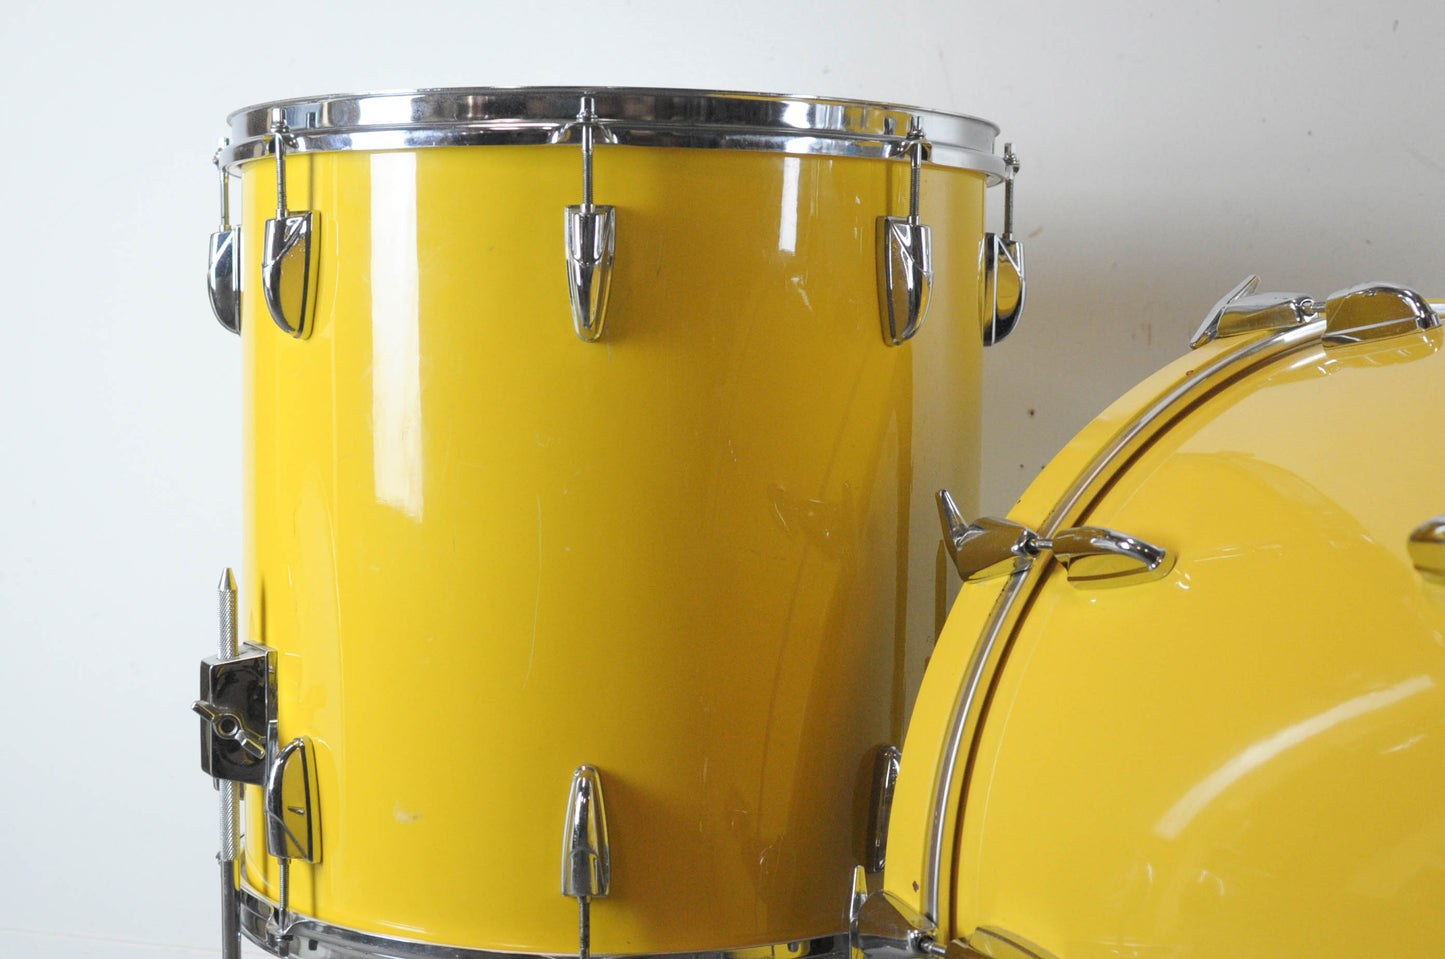 1980s Yamaha Tour Custom 8000  "Mellow Yellow" Drum Set